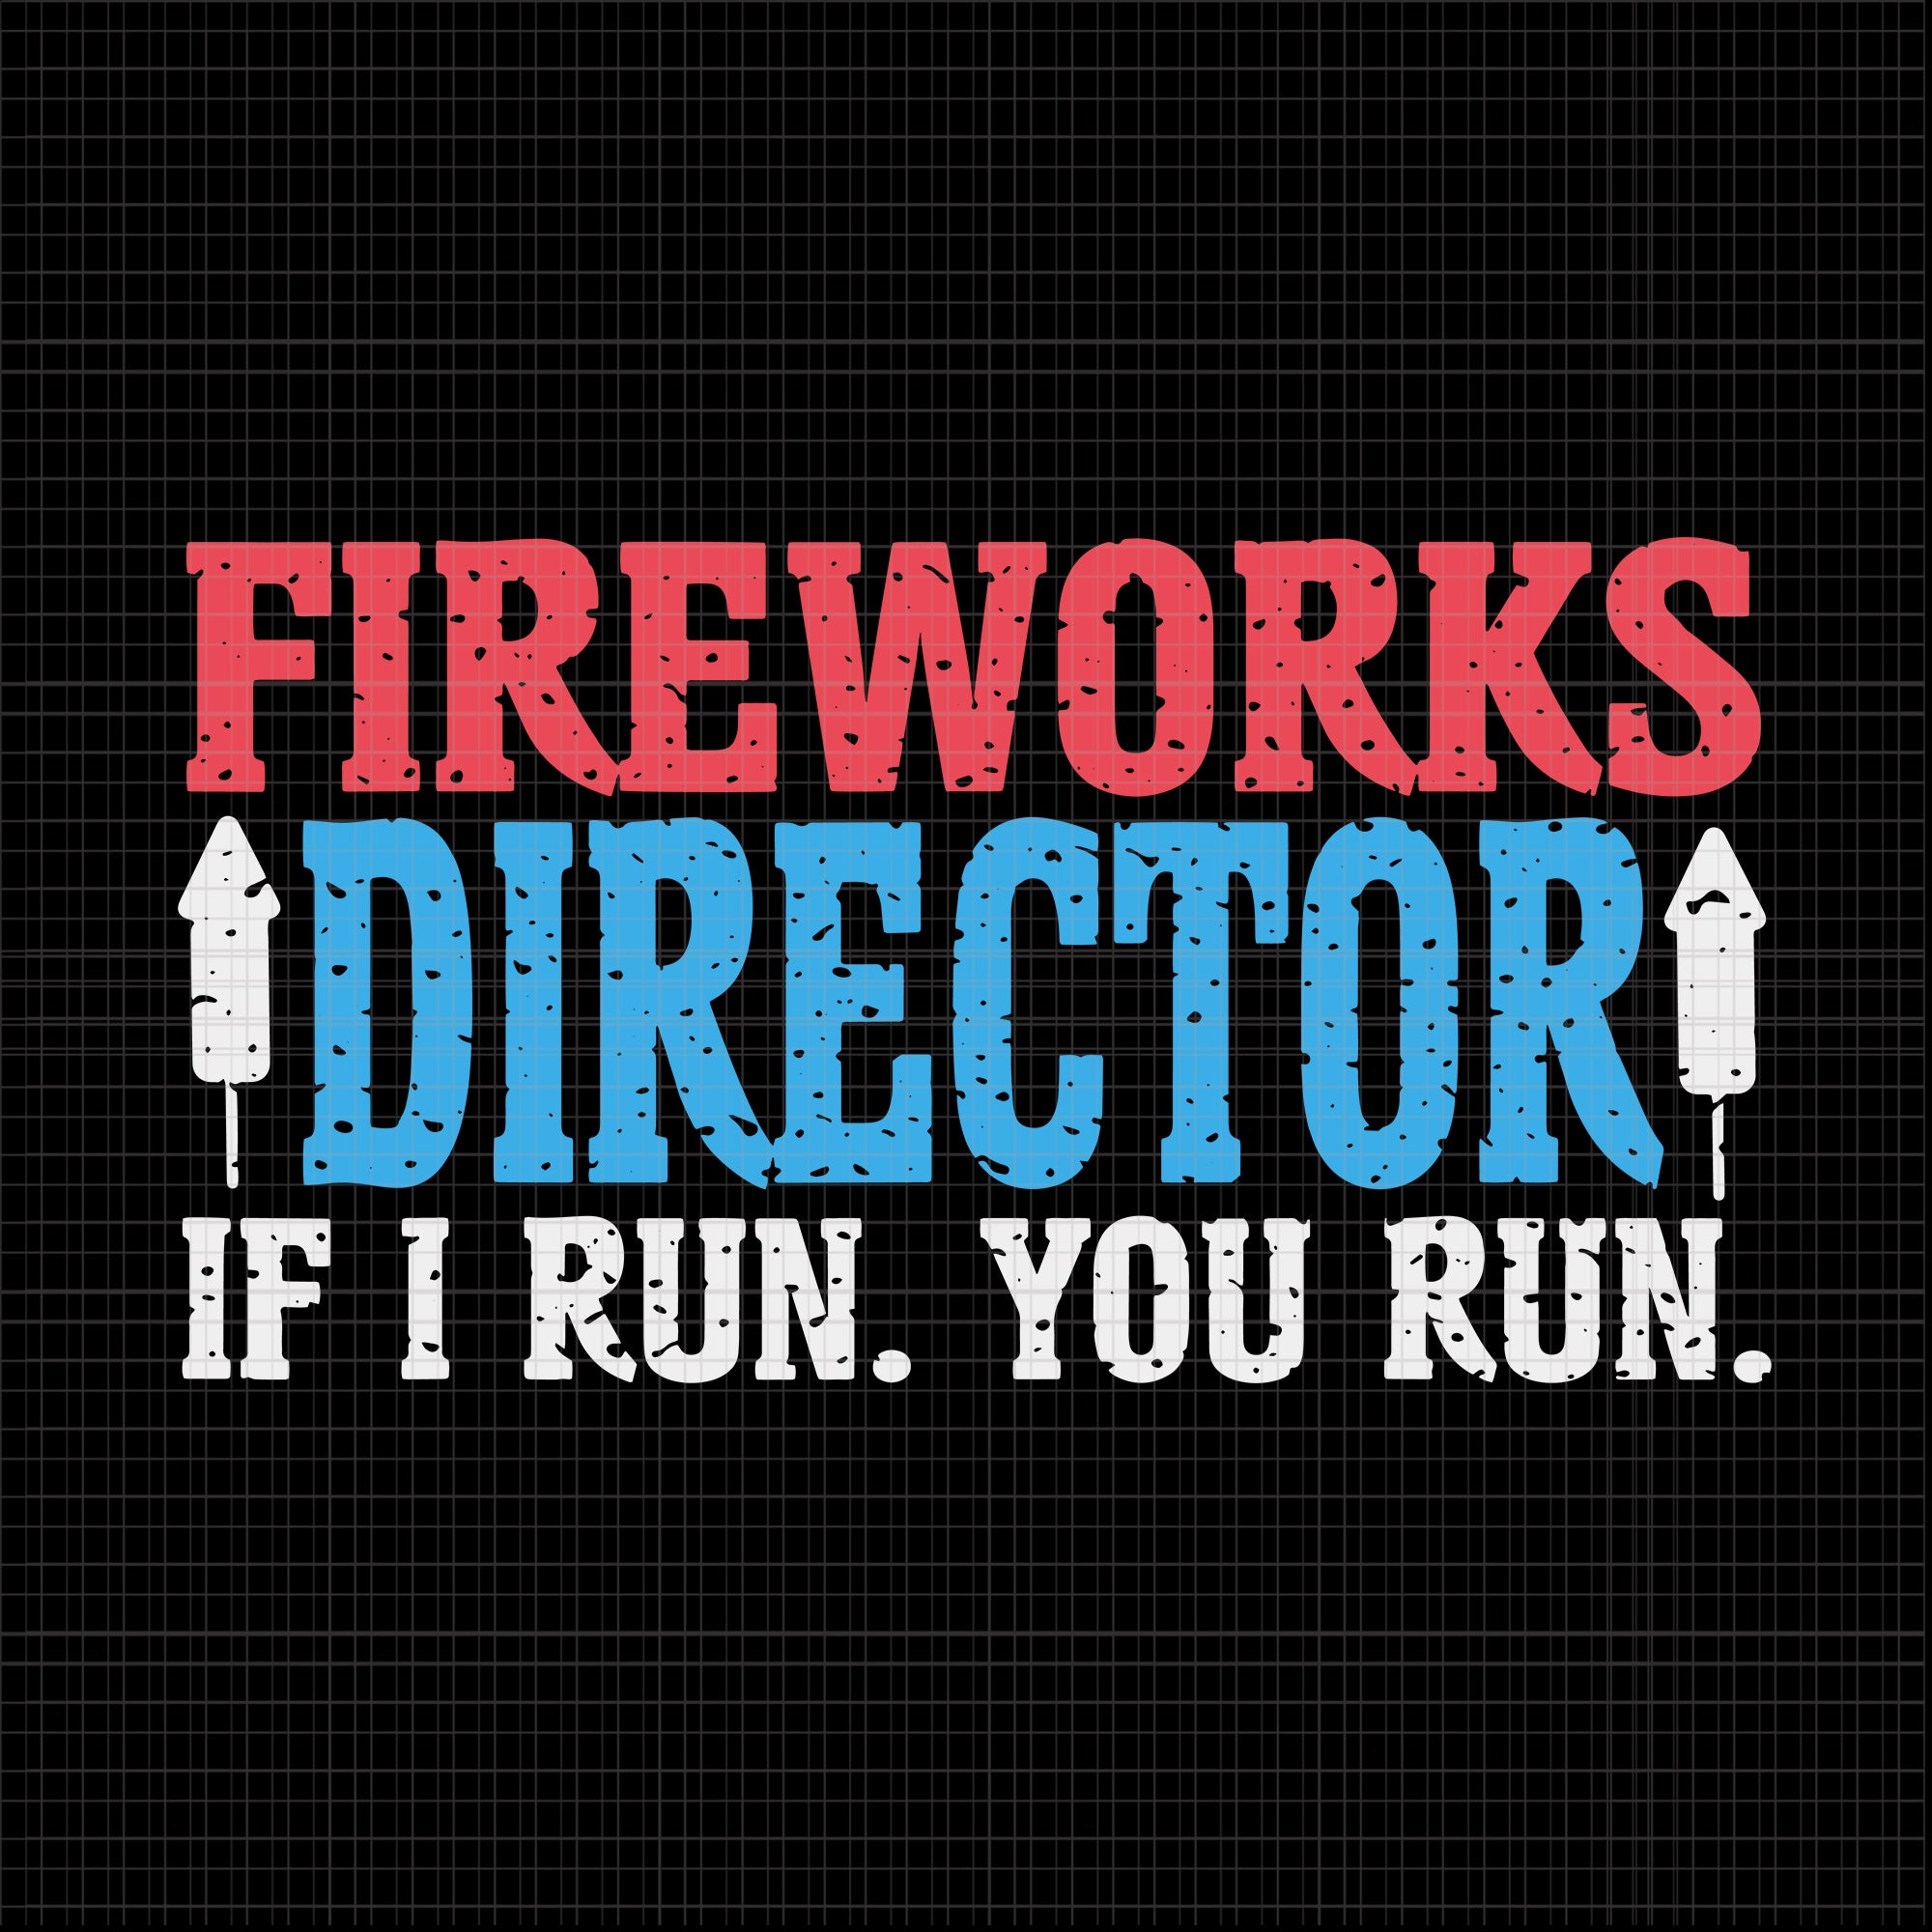 Firework Director Technician I Run You Run 4th Of July, Firework Director If I Run You Run svg, Firework svg, 4th of July svg, 4th of July vector